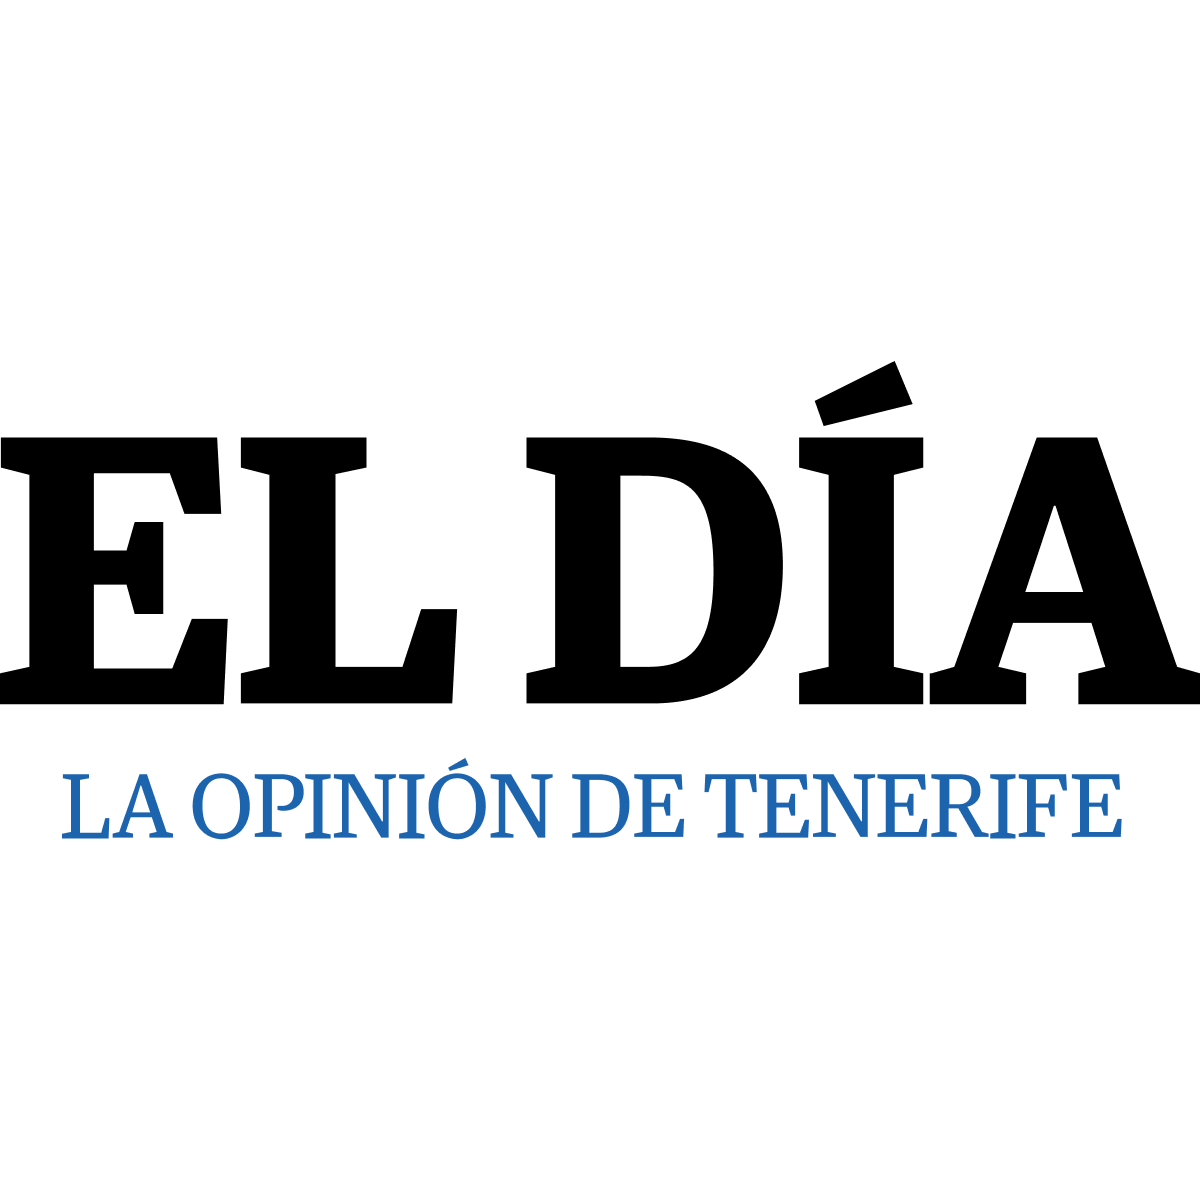 www.eldia.es